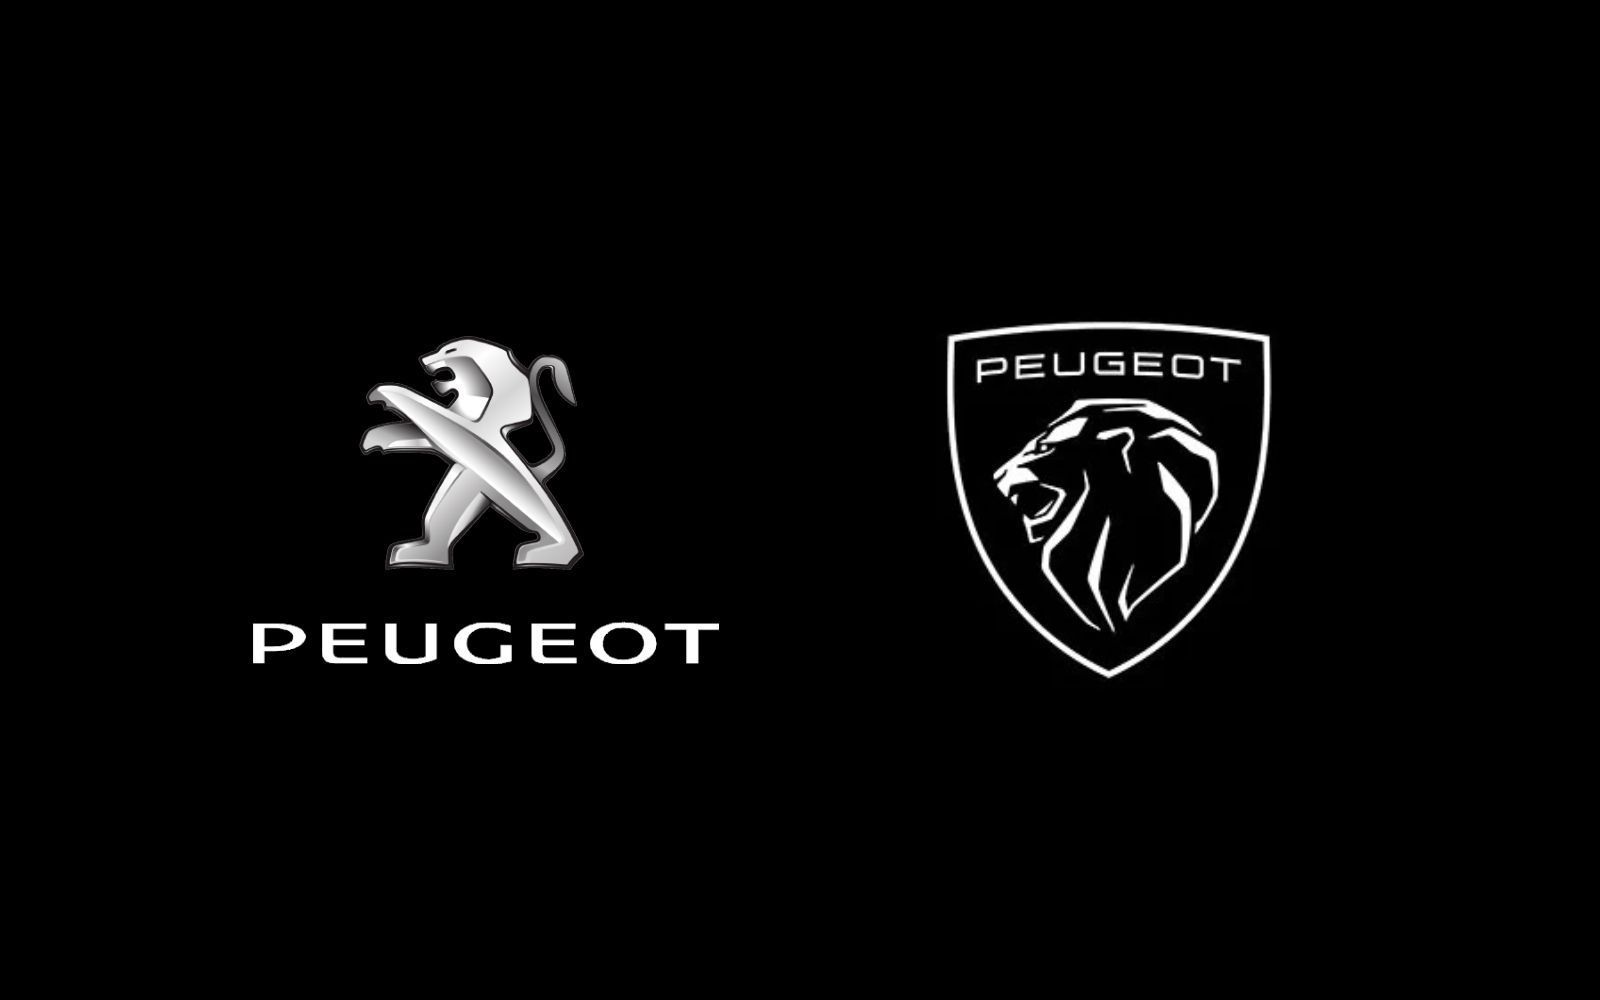 Antiguo logotipo de Peugeot a la izquierda y nuevo logotipo de Peugeot a la derecha